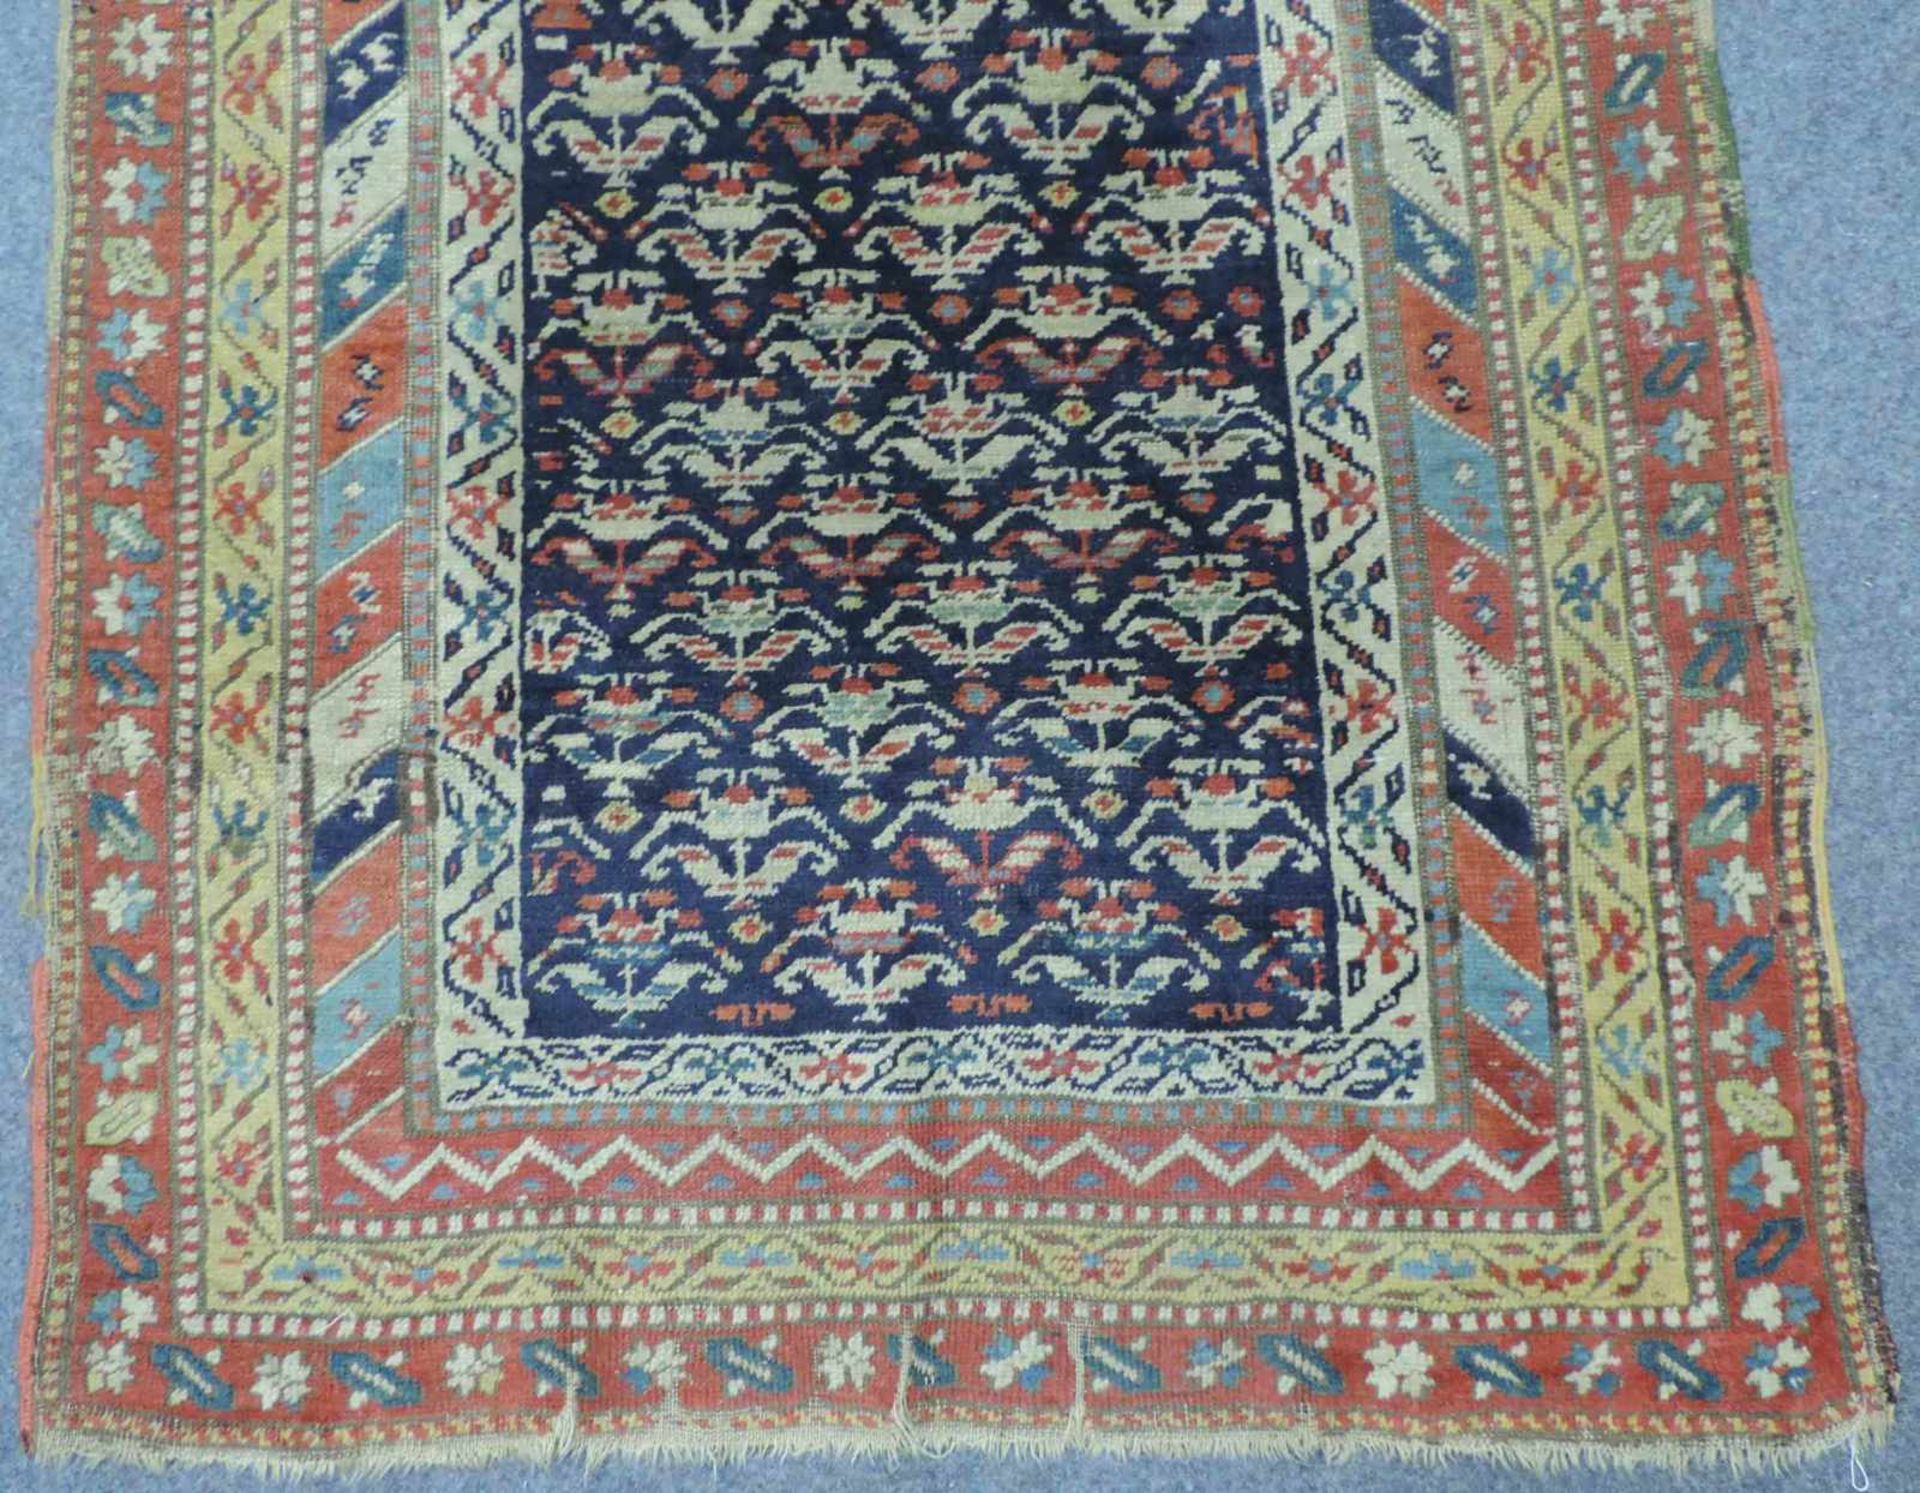 Azeri Teppich, Ost - Kaukasus, antik, Mitte 19. Jahrhundert. 264 cm x 115 cm. Handgeknüpft. Wolle - Bild 2 aus 6